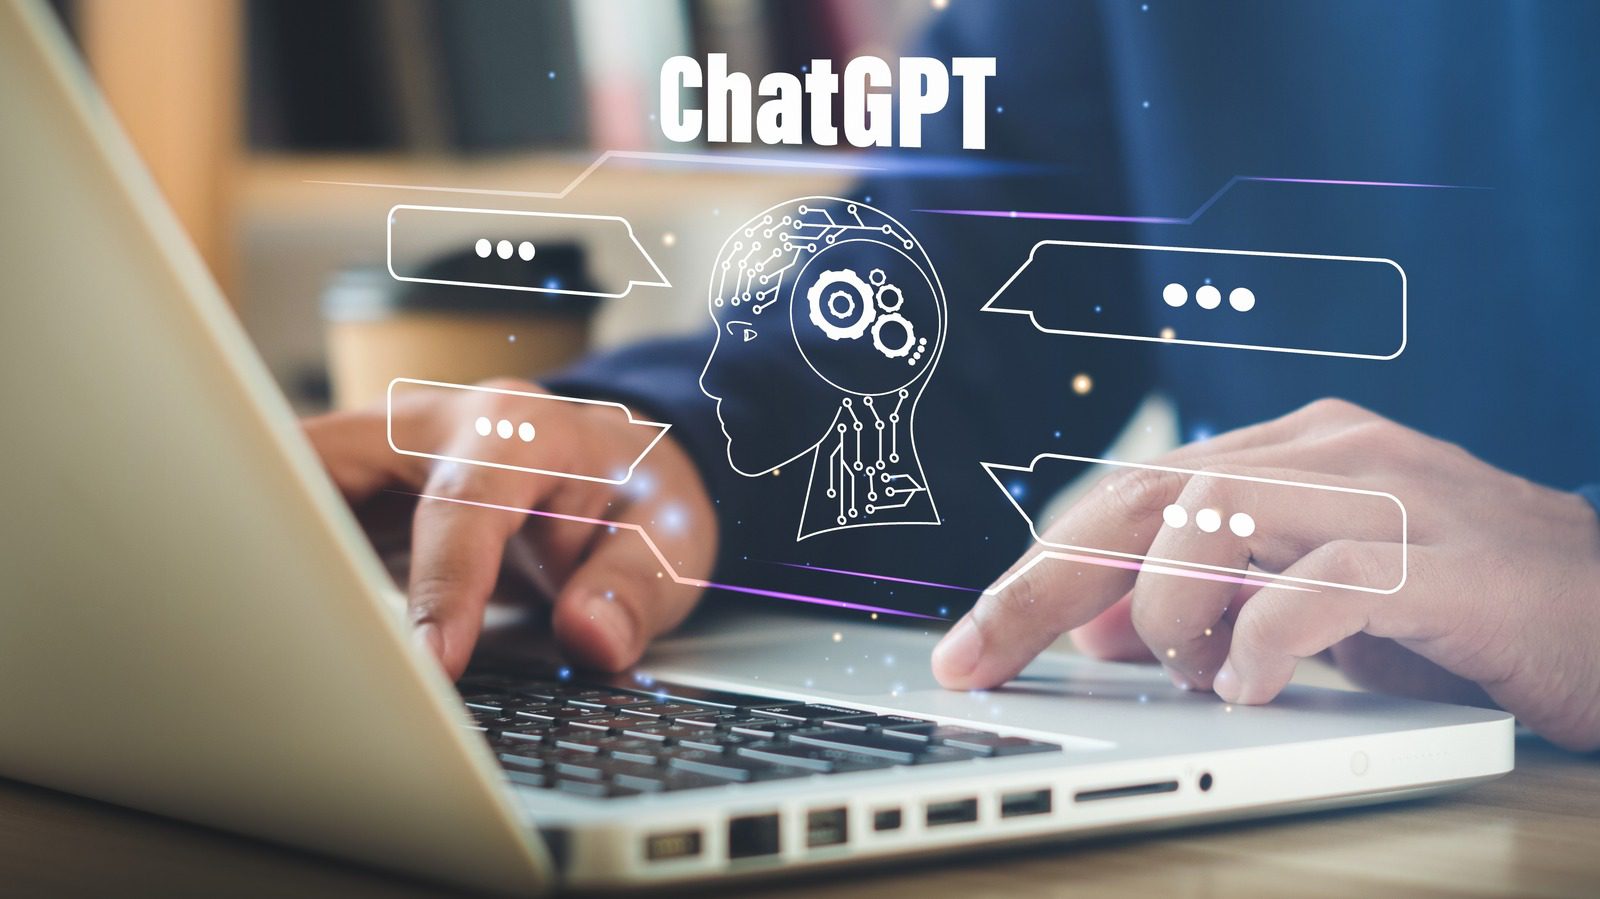 ChatGPT’ye Teknolojinin Geleceğinin Nasıl Olacağını Sorduk.  Biz buna hazır değiliz